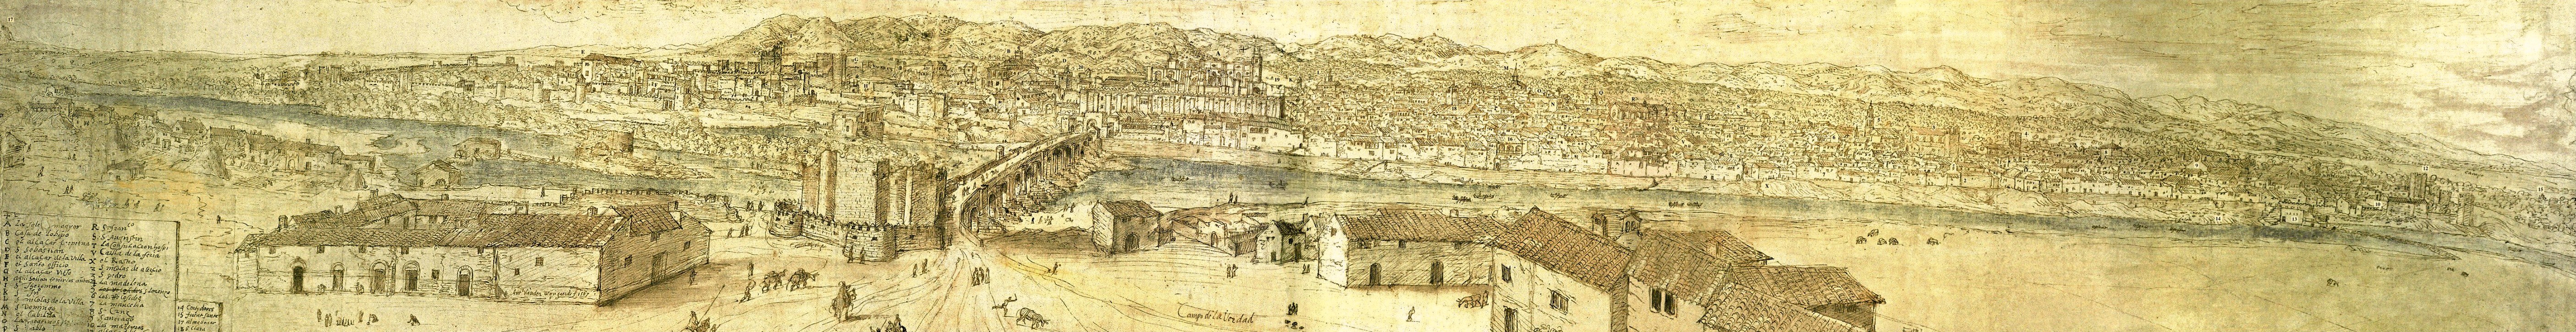 Córdoba en 1567